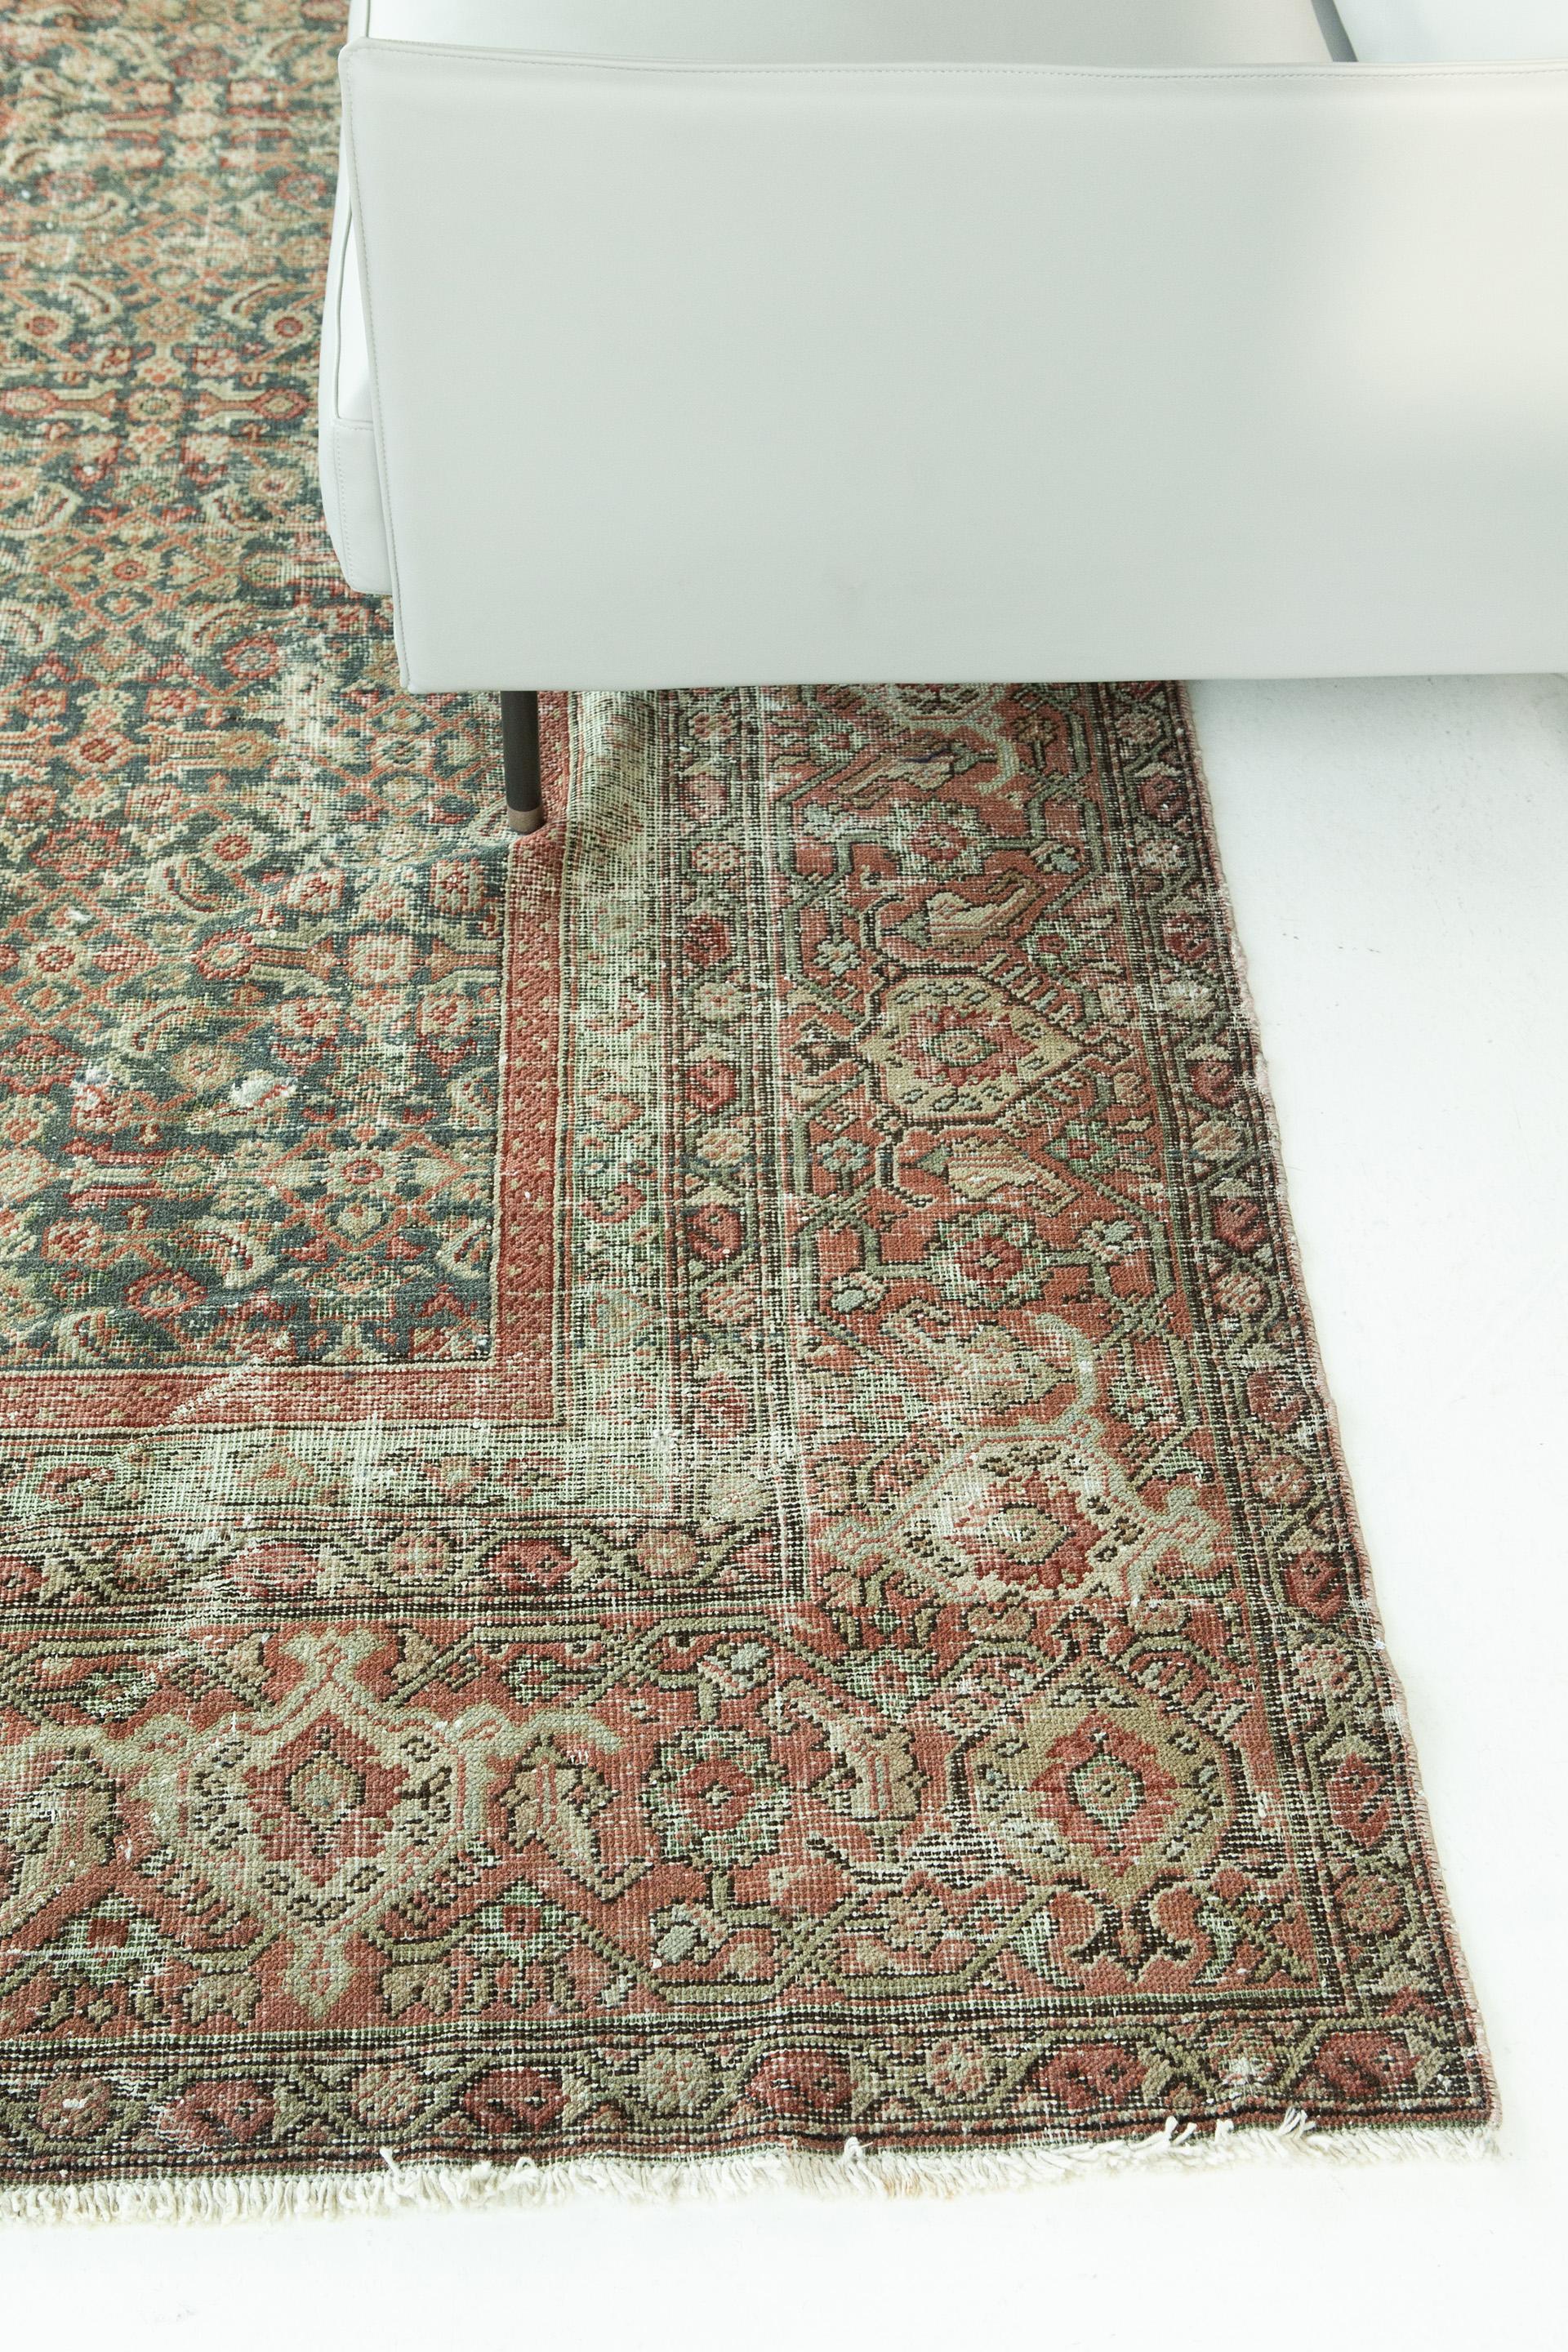 Ce tapis présente un motif sur toute sa surface avec un rouge proéminent. Son design convaincant accompagnera de nombreux types d'intérieurs différents.




Numéro de tapis 27042
Taille 9' 6